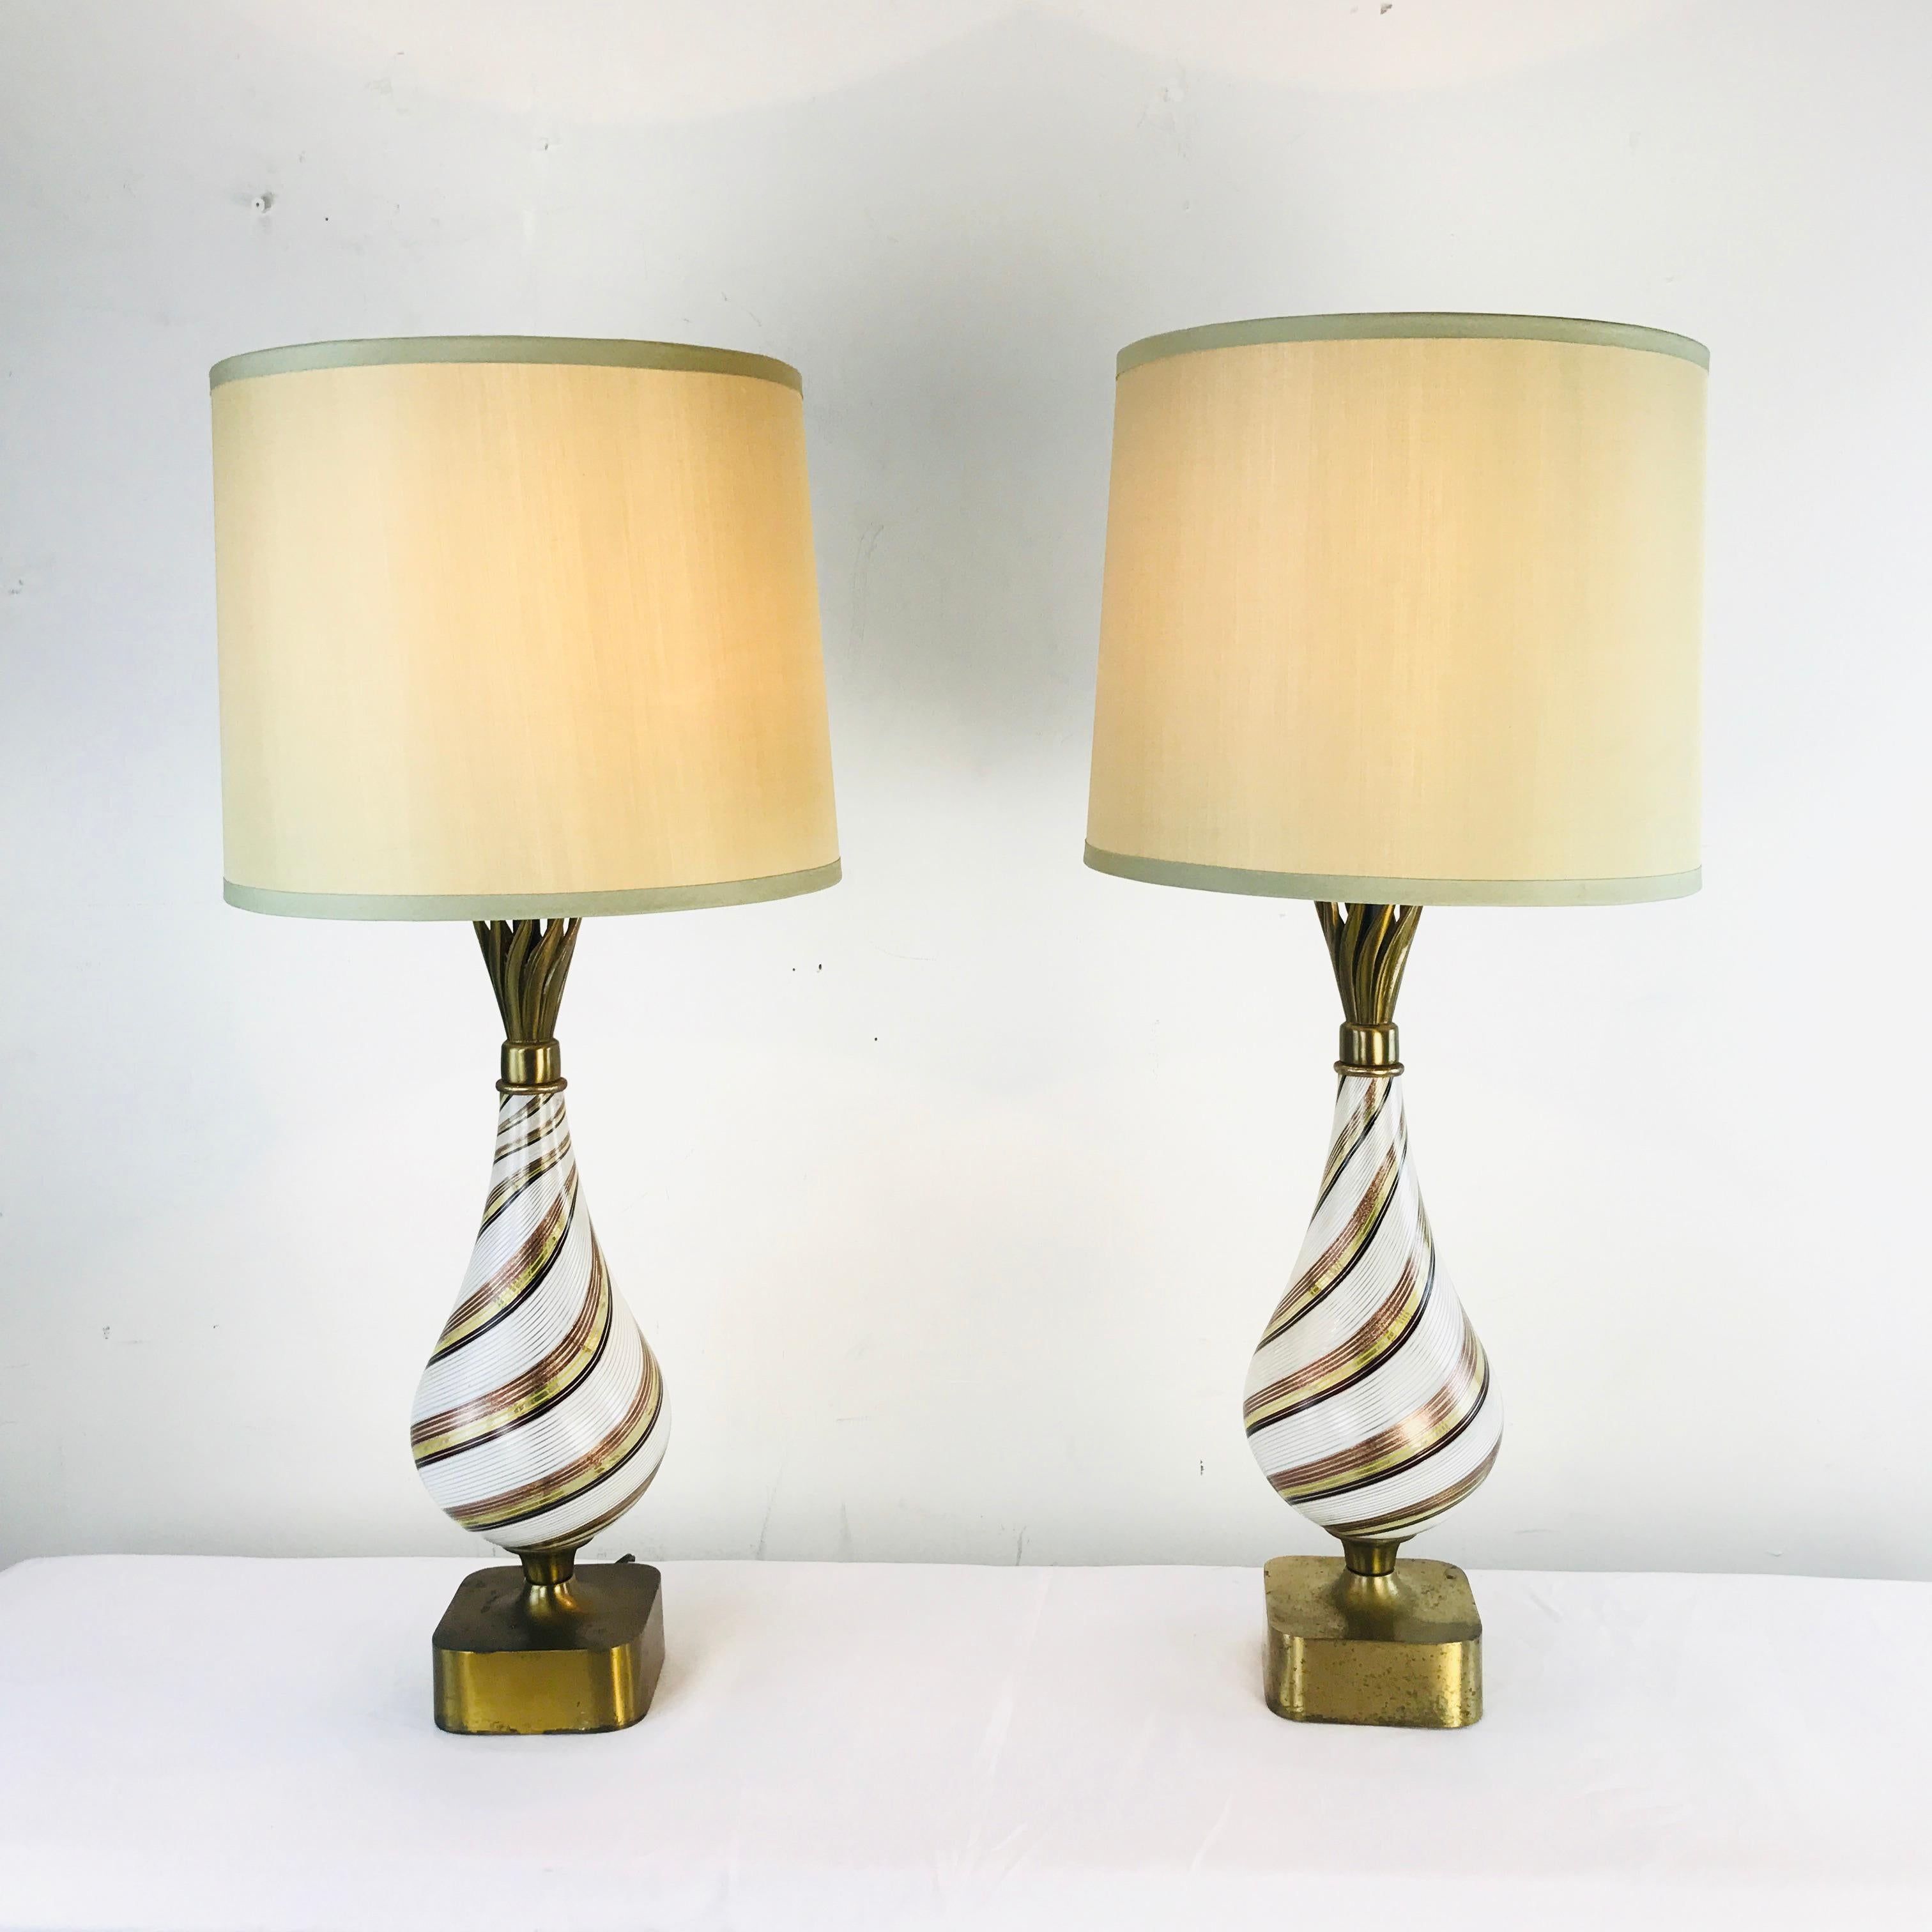 Fantastic lamps by Corrado 